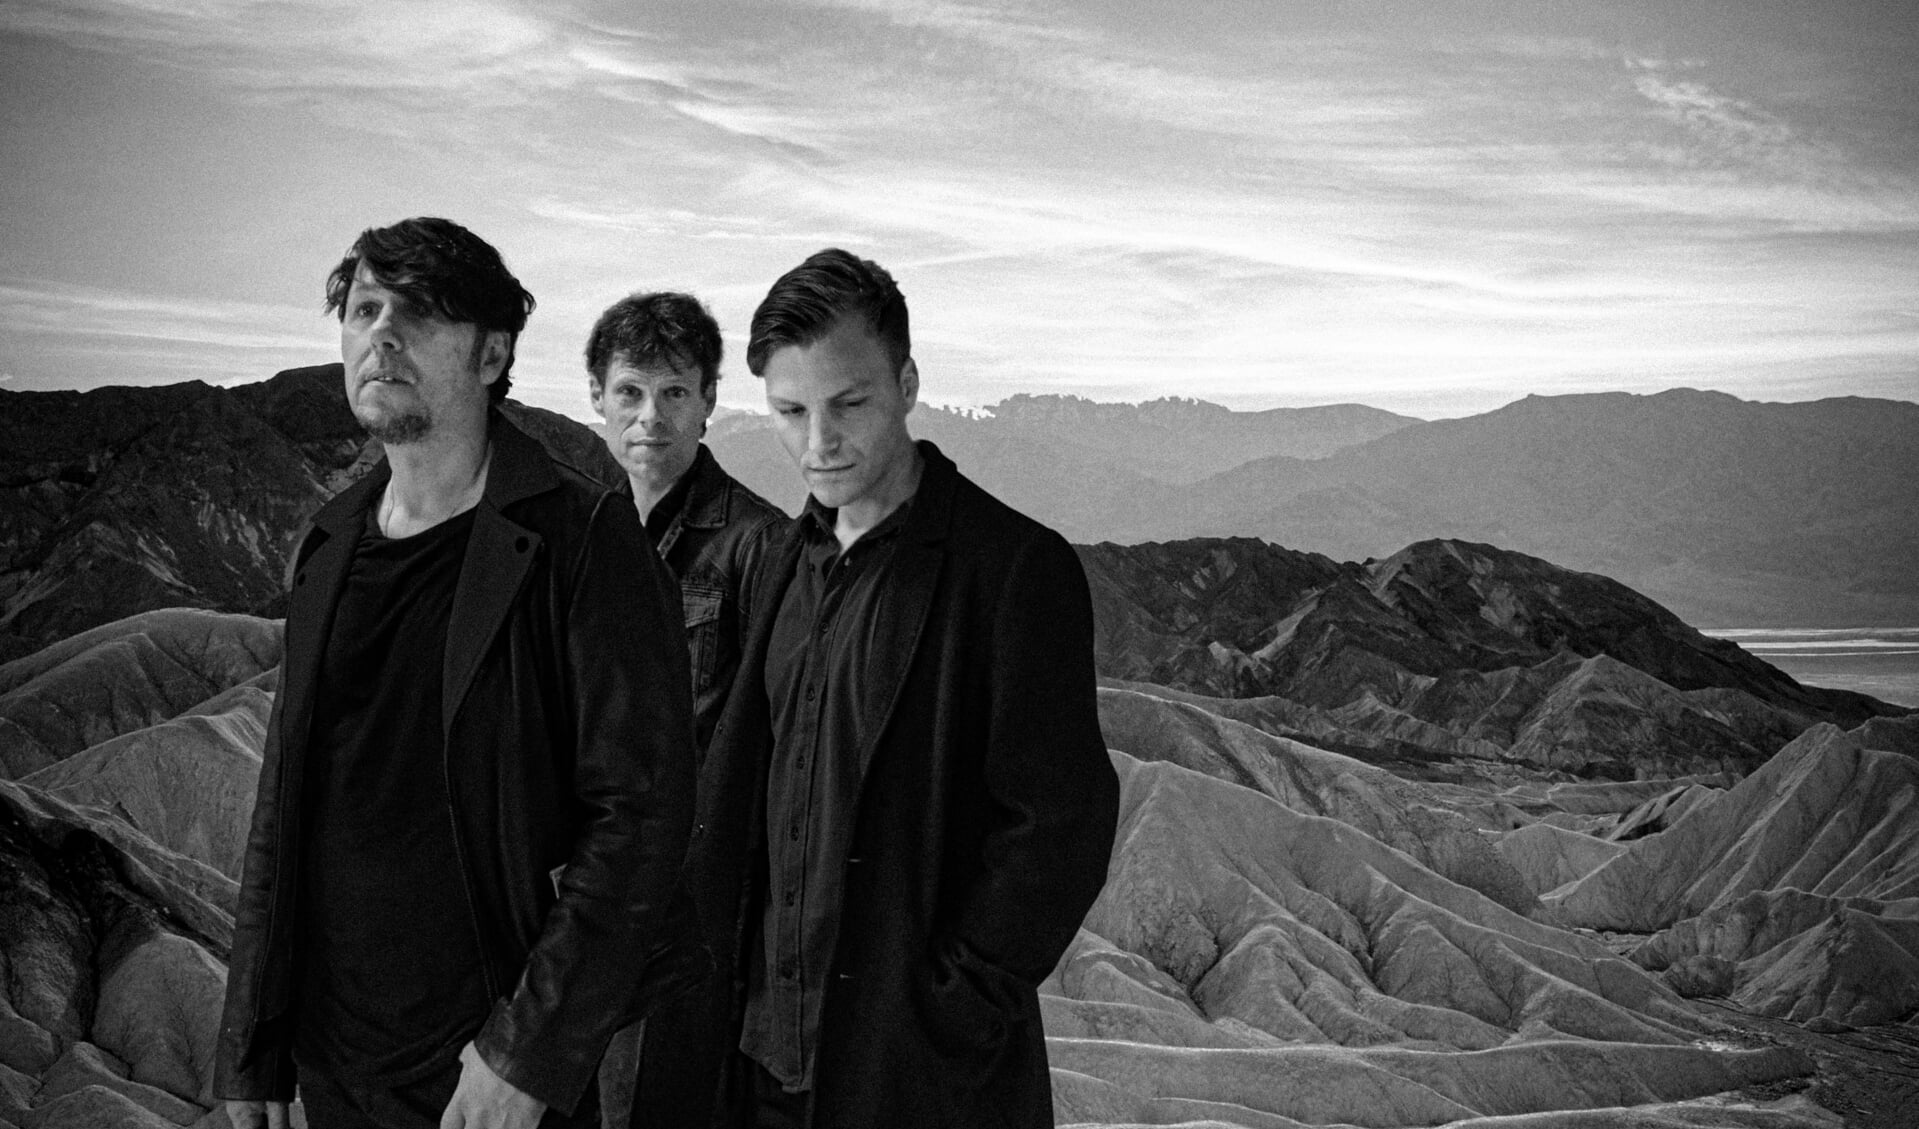 De 3Js brengen een vernieuwd tribute aan U2 met nog meer hits van de Ierse band.